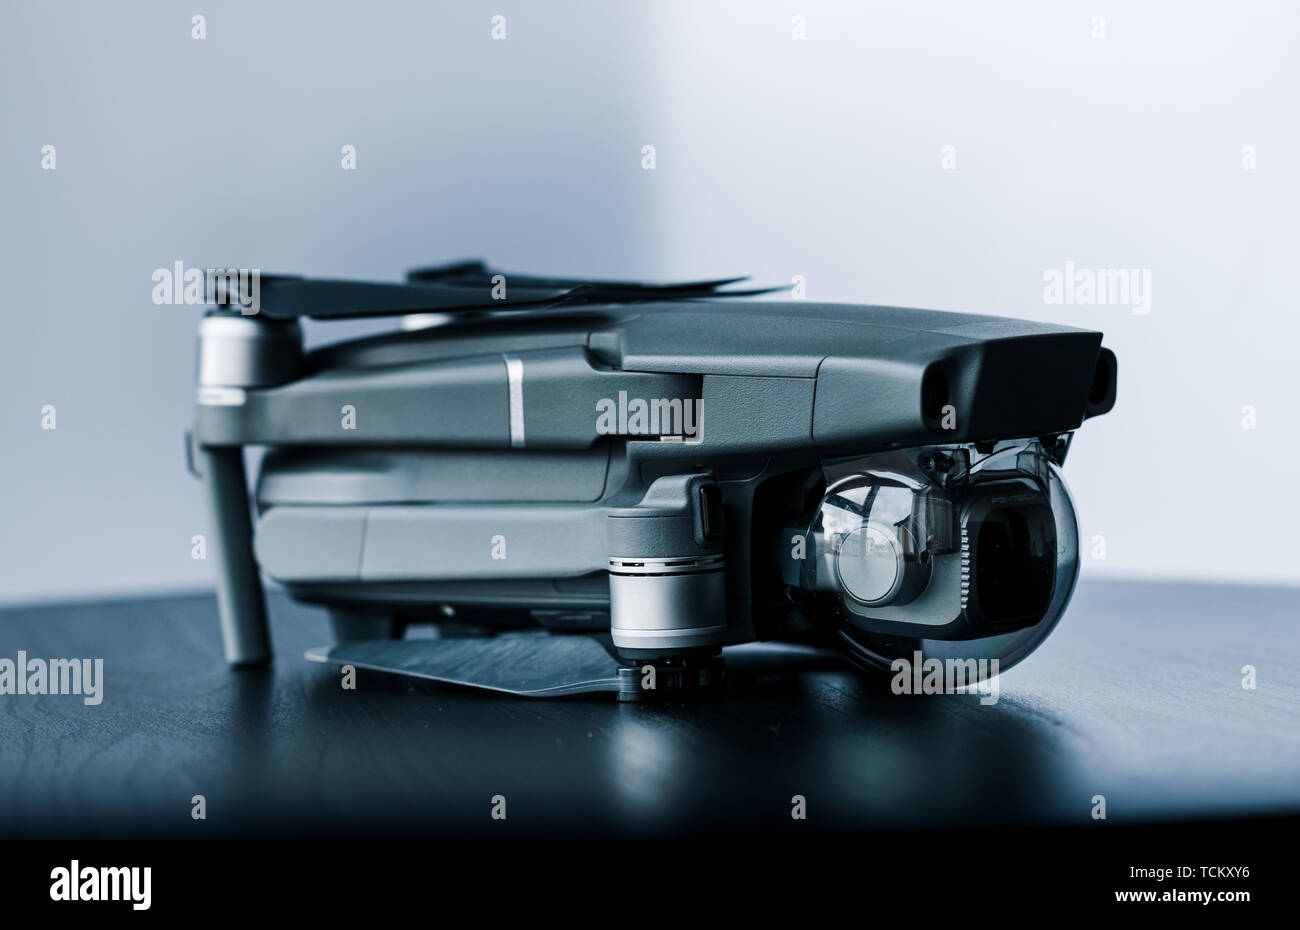 Close up isolato colpo di nuovi consumatori Mavic 2 Pro drone da DJI contro uno sfondo bianco Foto Stock